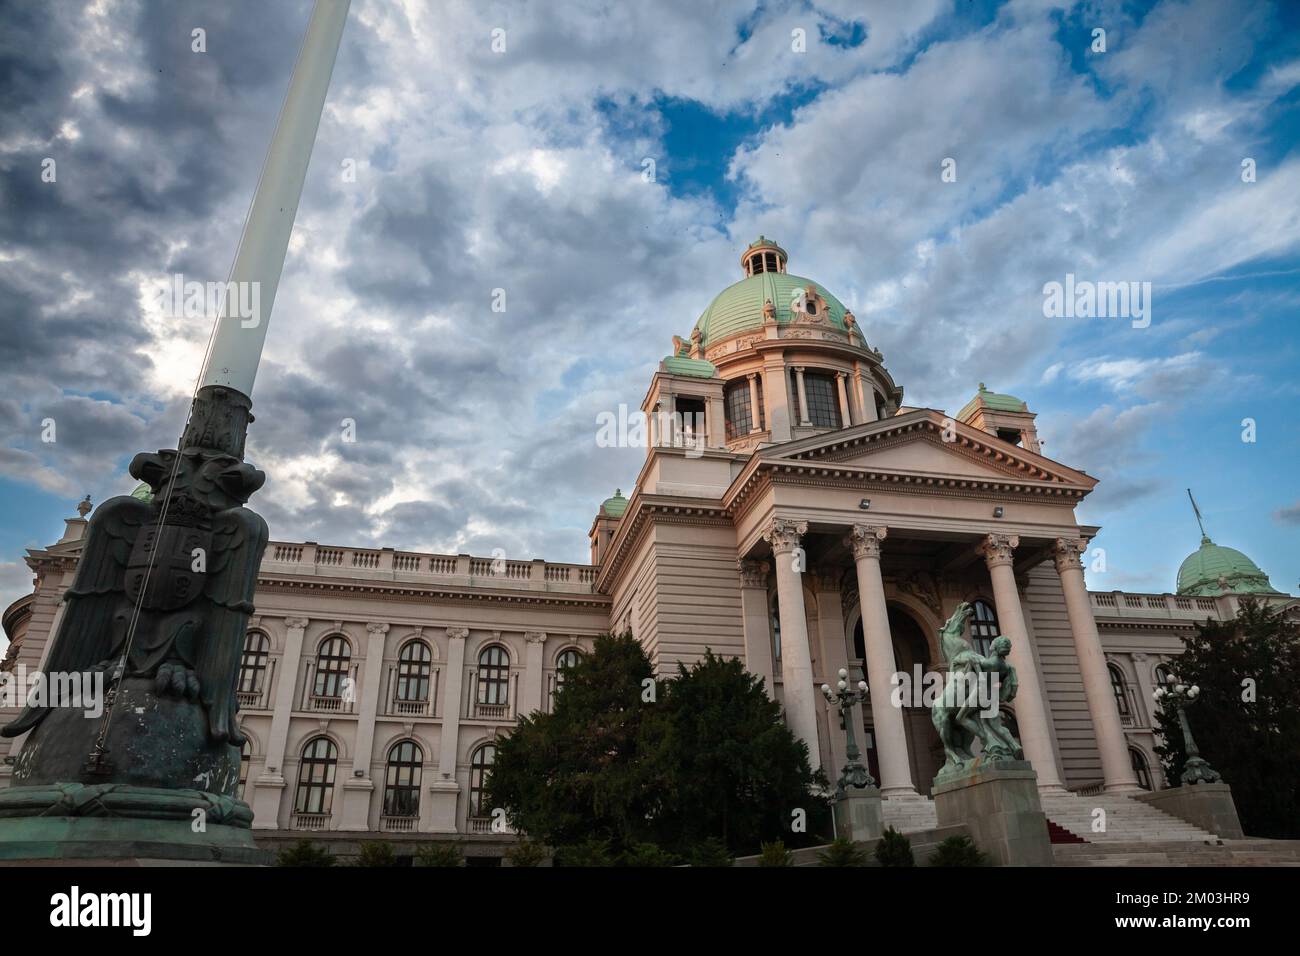 Foto de narodna skupstina, la Asamblea Nacional de Serbia, con sus monumentales escaleras. La Cámara de la Asamblea Nacional de la República de Serbi Foto de stock